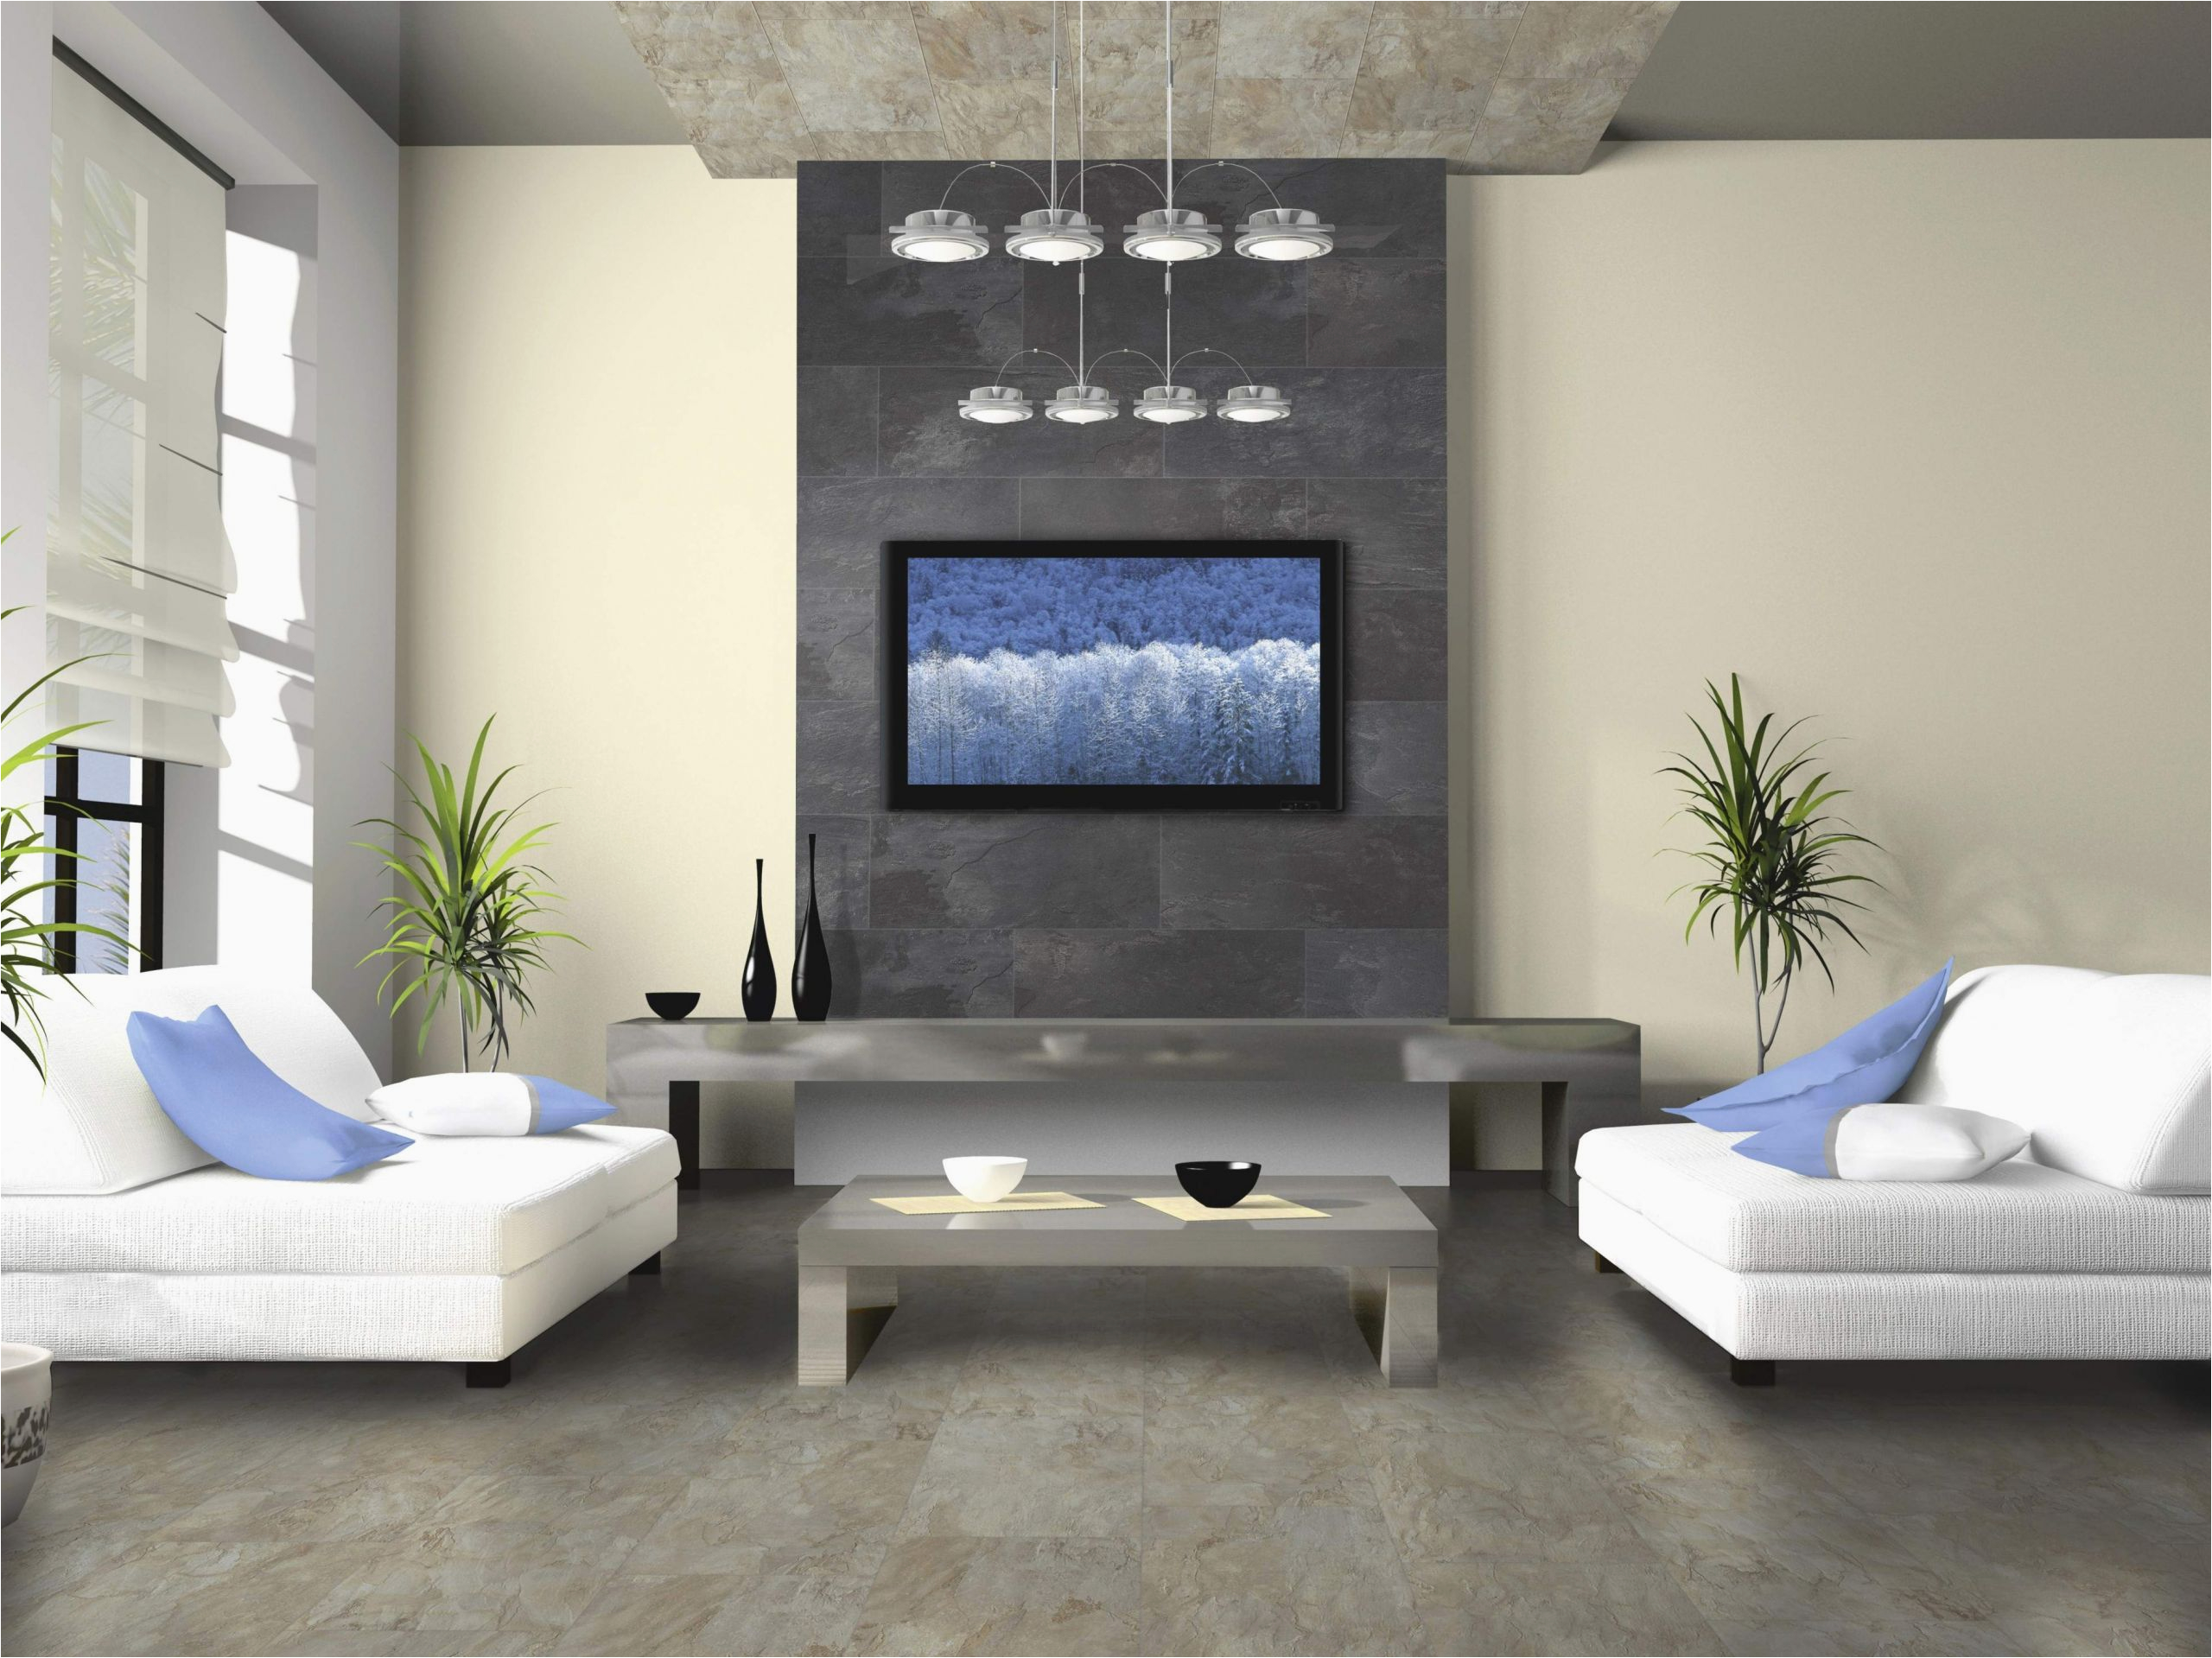 16 qm wohnzimmer einrichten luxus deko bilder wohnzimmer das beste von dekoration wohnzimmer of 16 qm wohnzimmer einrichten scaled